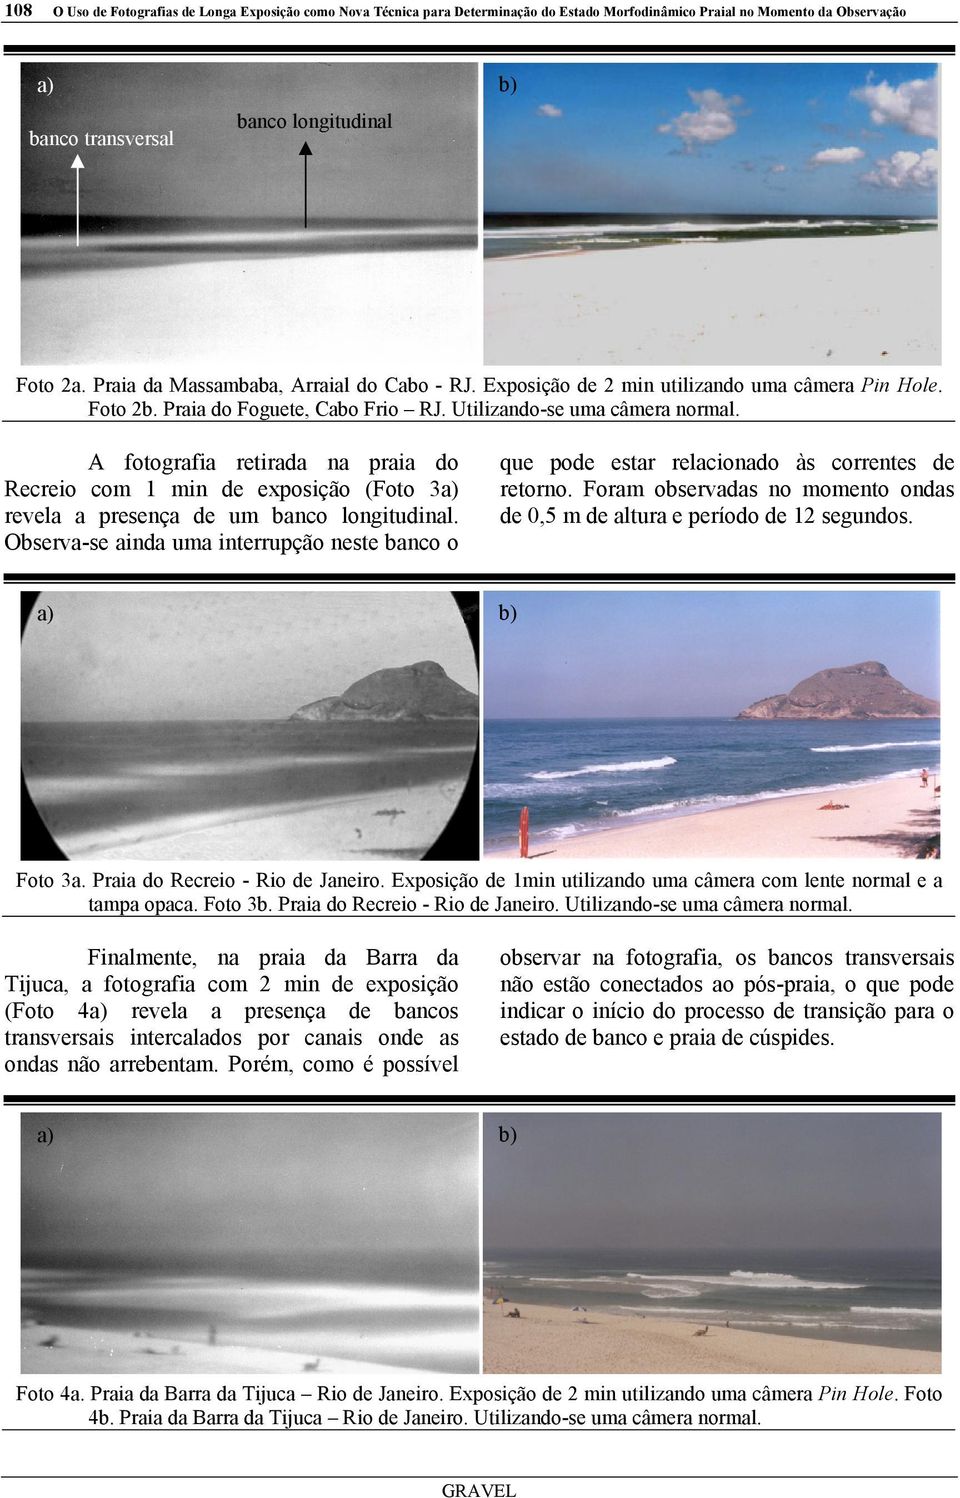 A fotografia retirada na praia do Recreio com 1 min de exposição (Foto 3 revela a presença de um banco longitudinal.